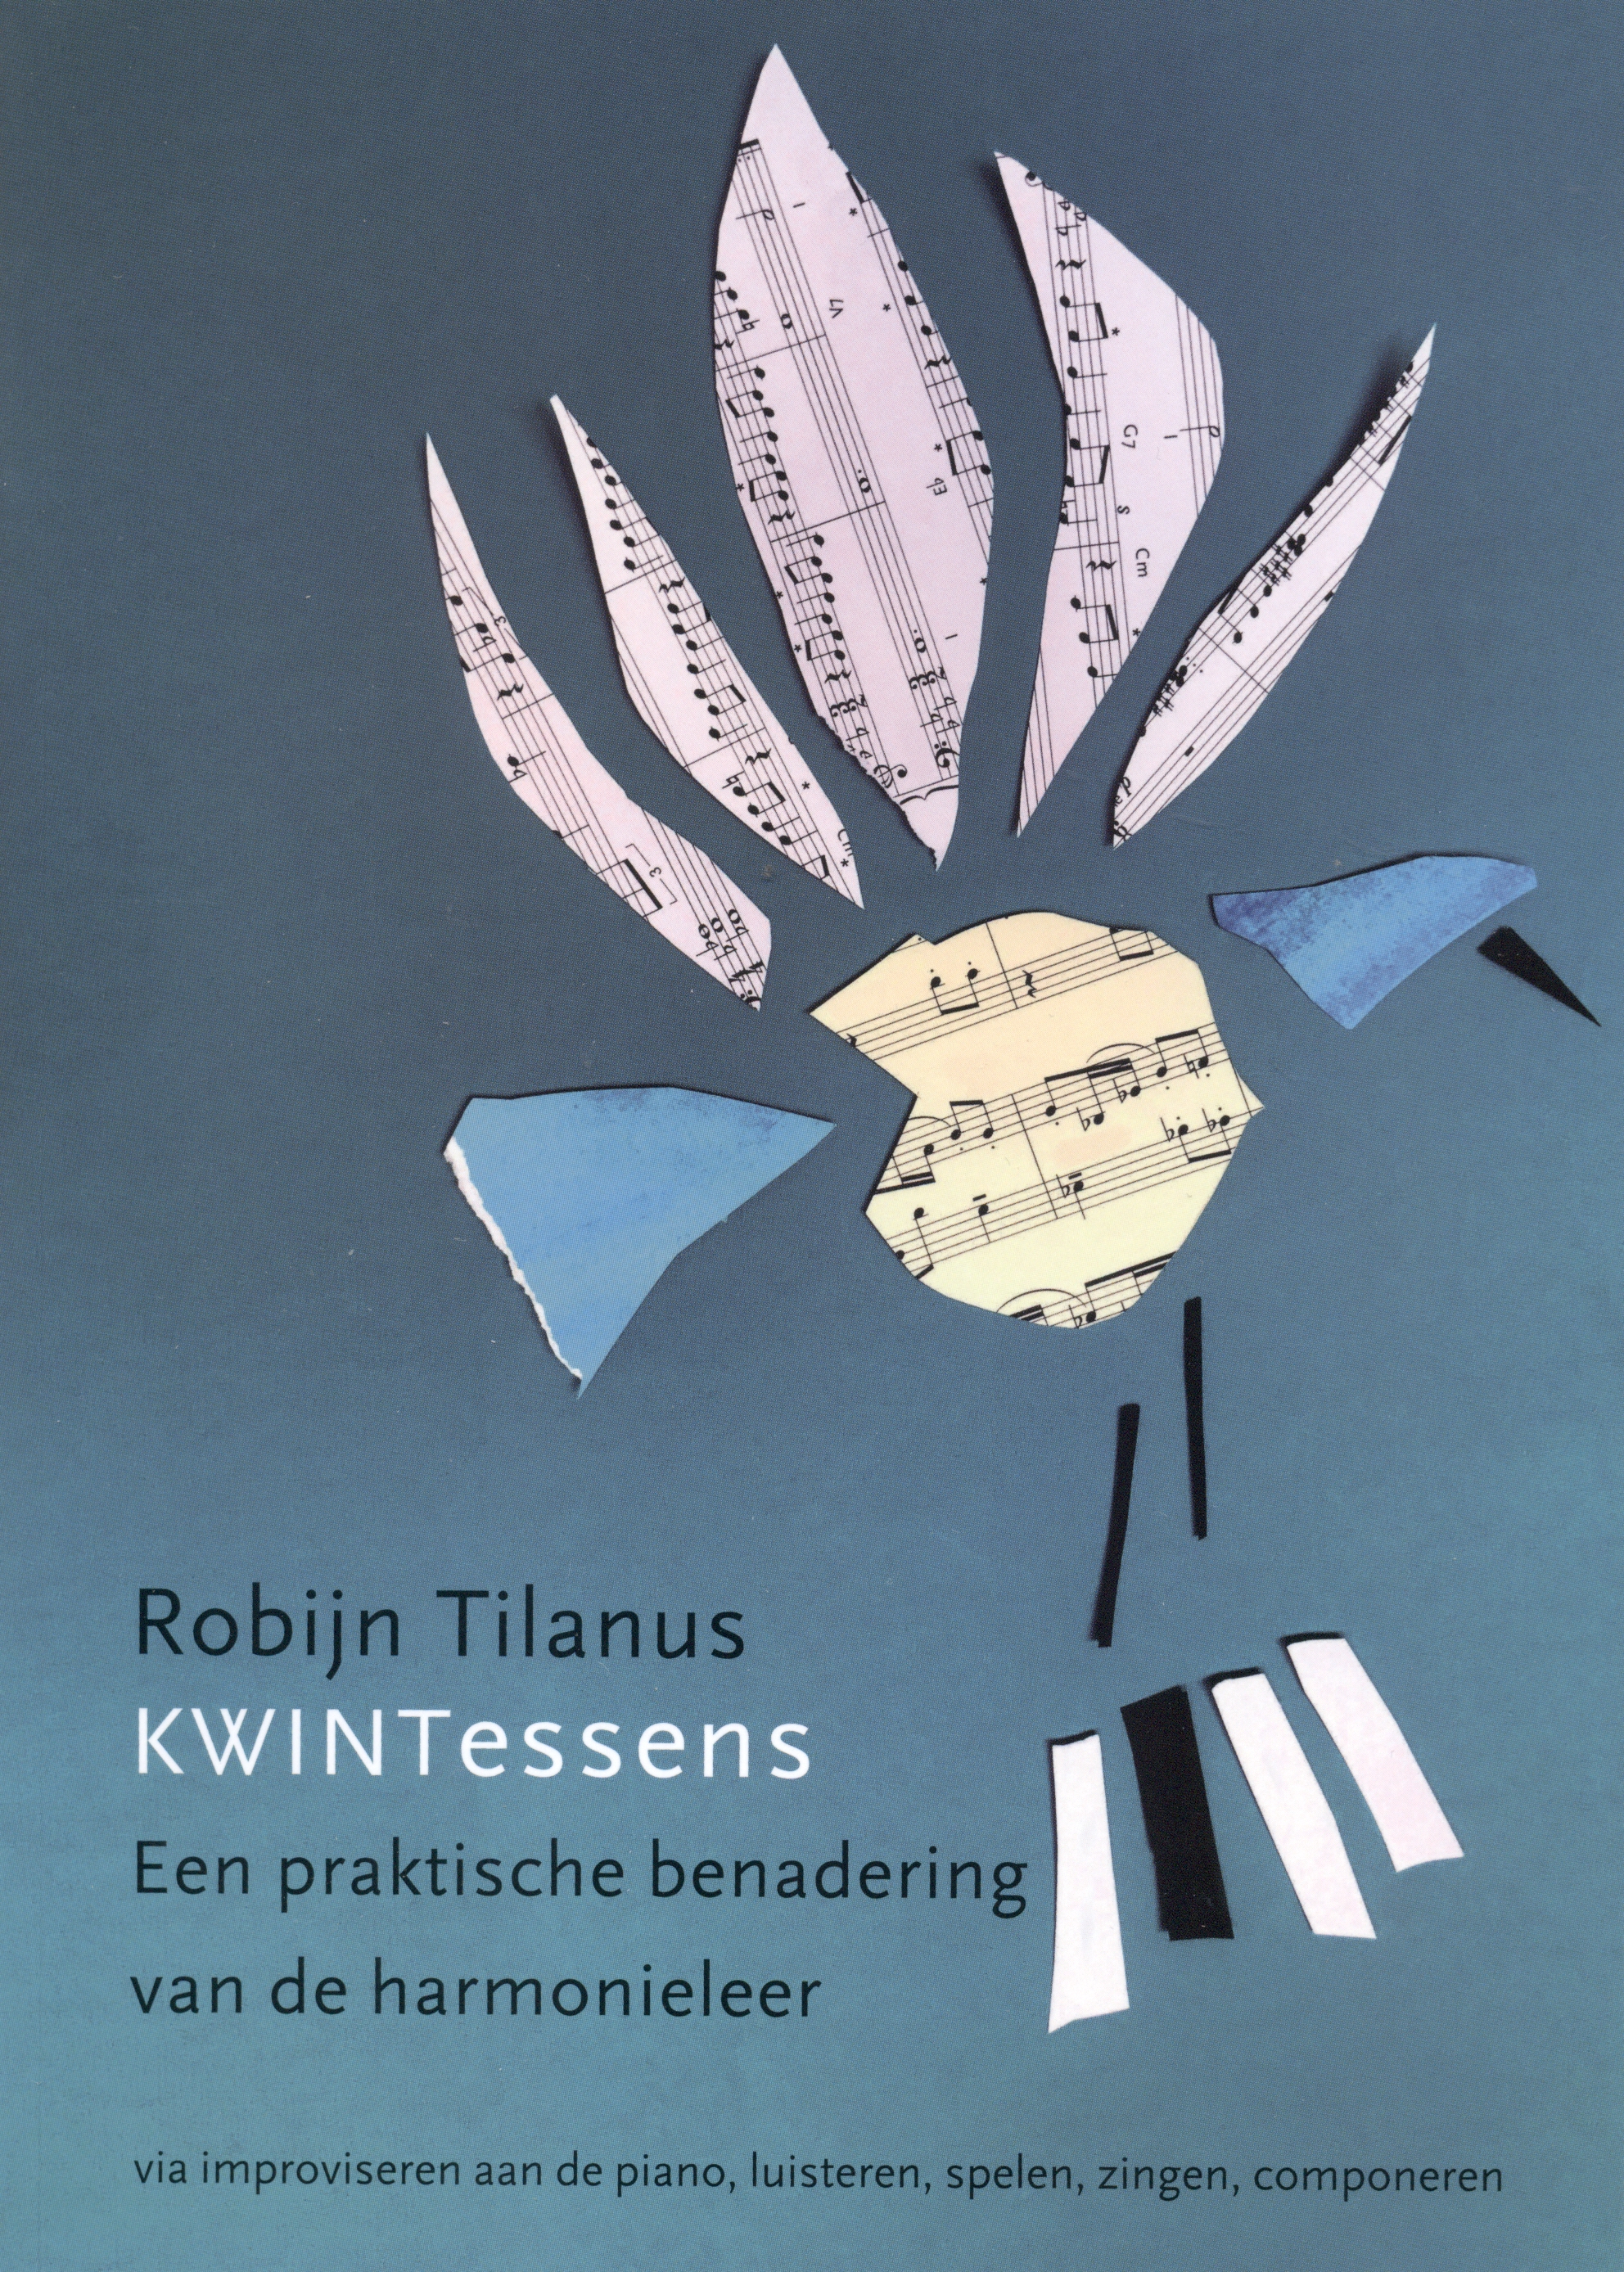 Tilanus: Kwintessens (Praktische benadering Harmonieleer)